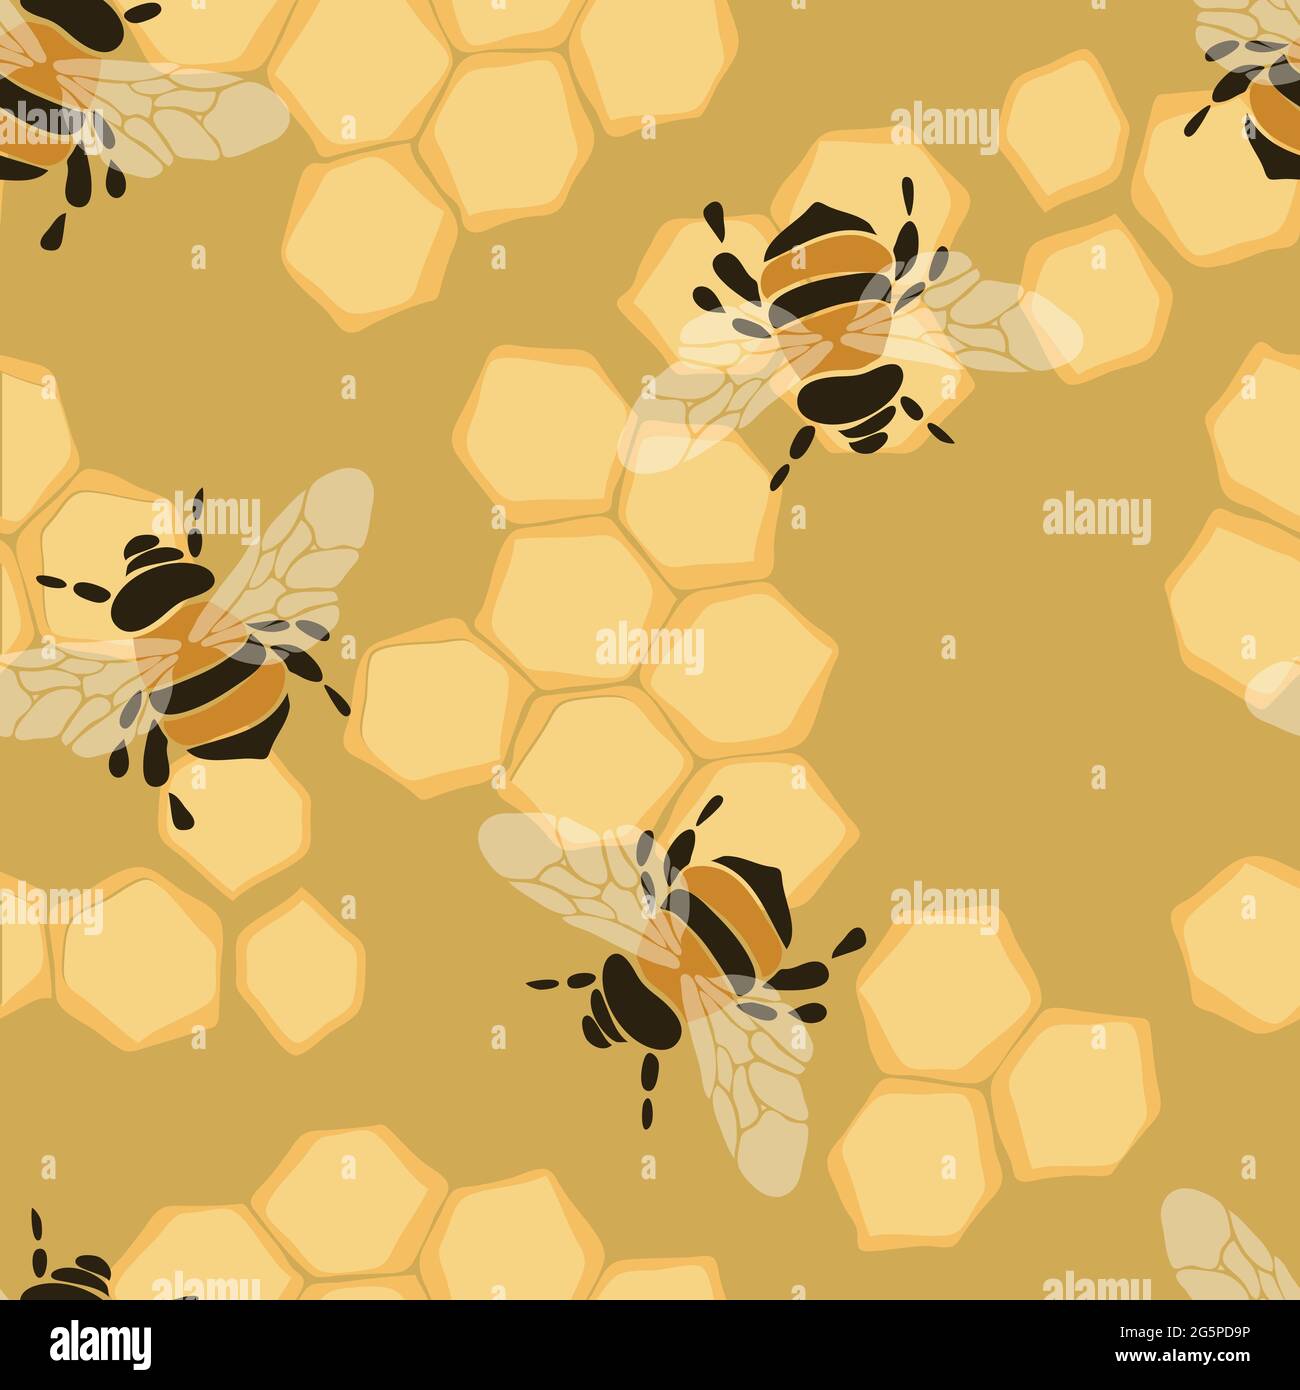 9389 Bumblebee Wallpaper Images Stock Photos  Vectors  Shutterstock